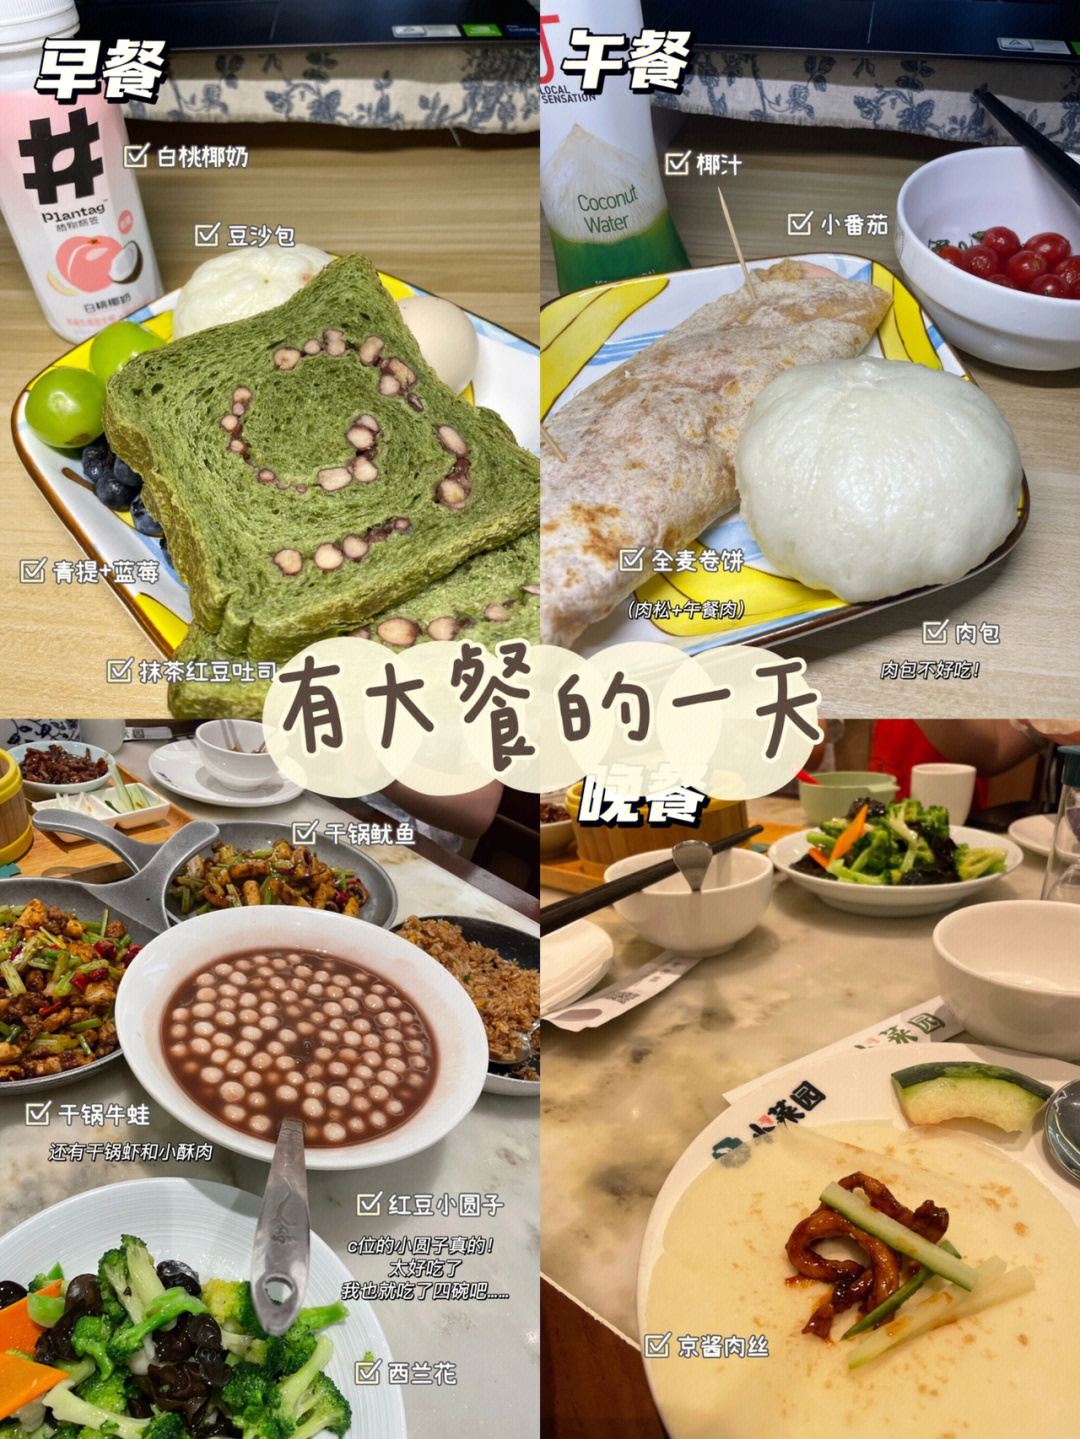 卷饼 包子 小番茄 椰子水晚餐:家常菜(外事)加餐:橘子 坚果 方糕